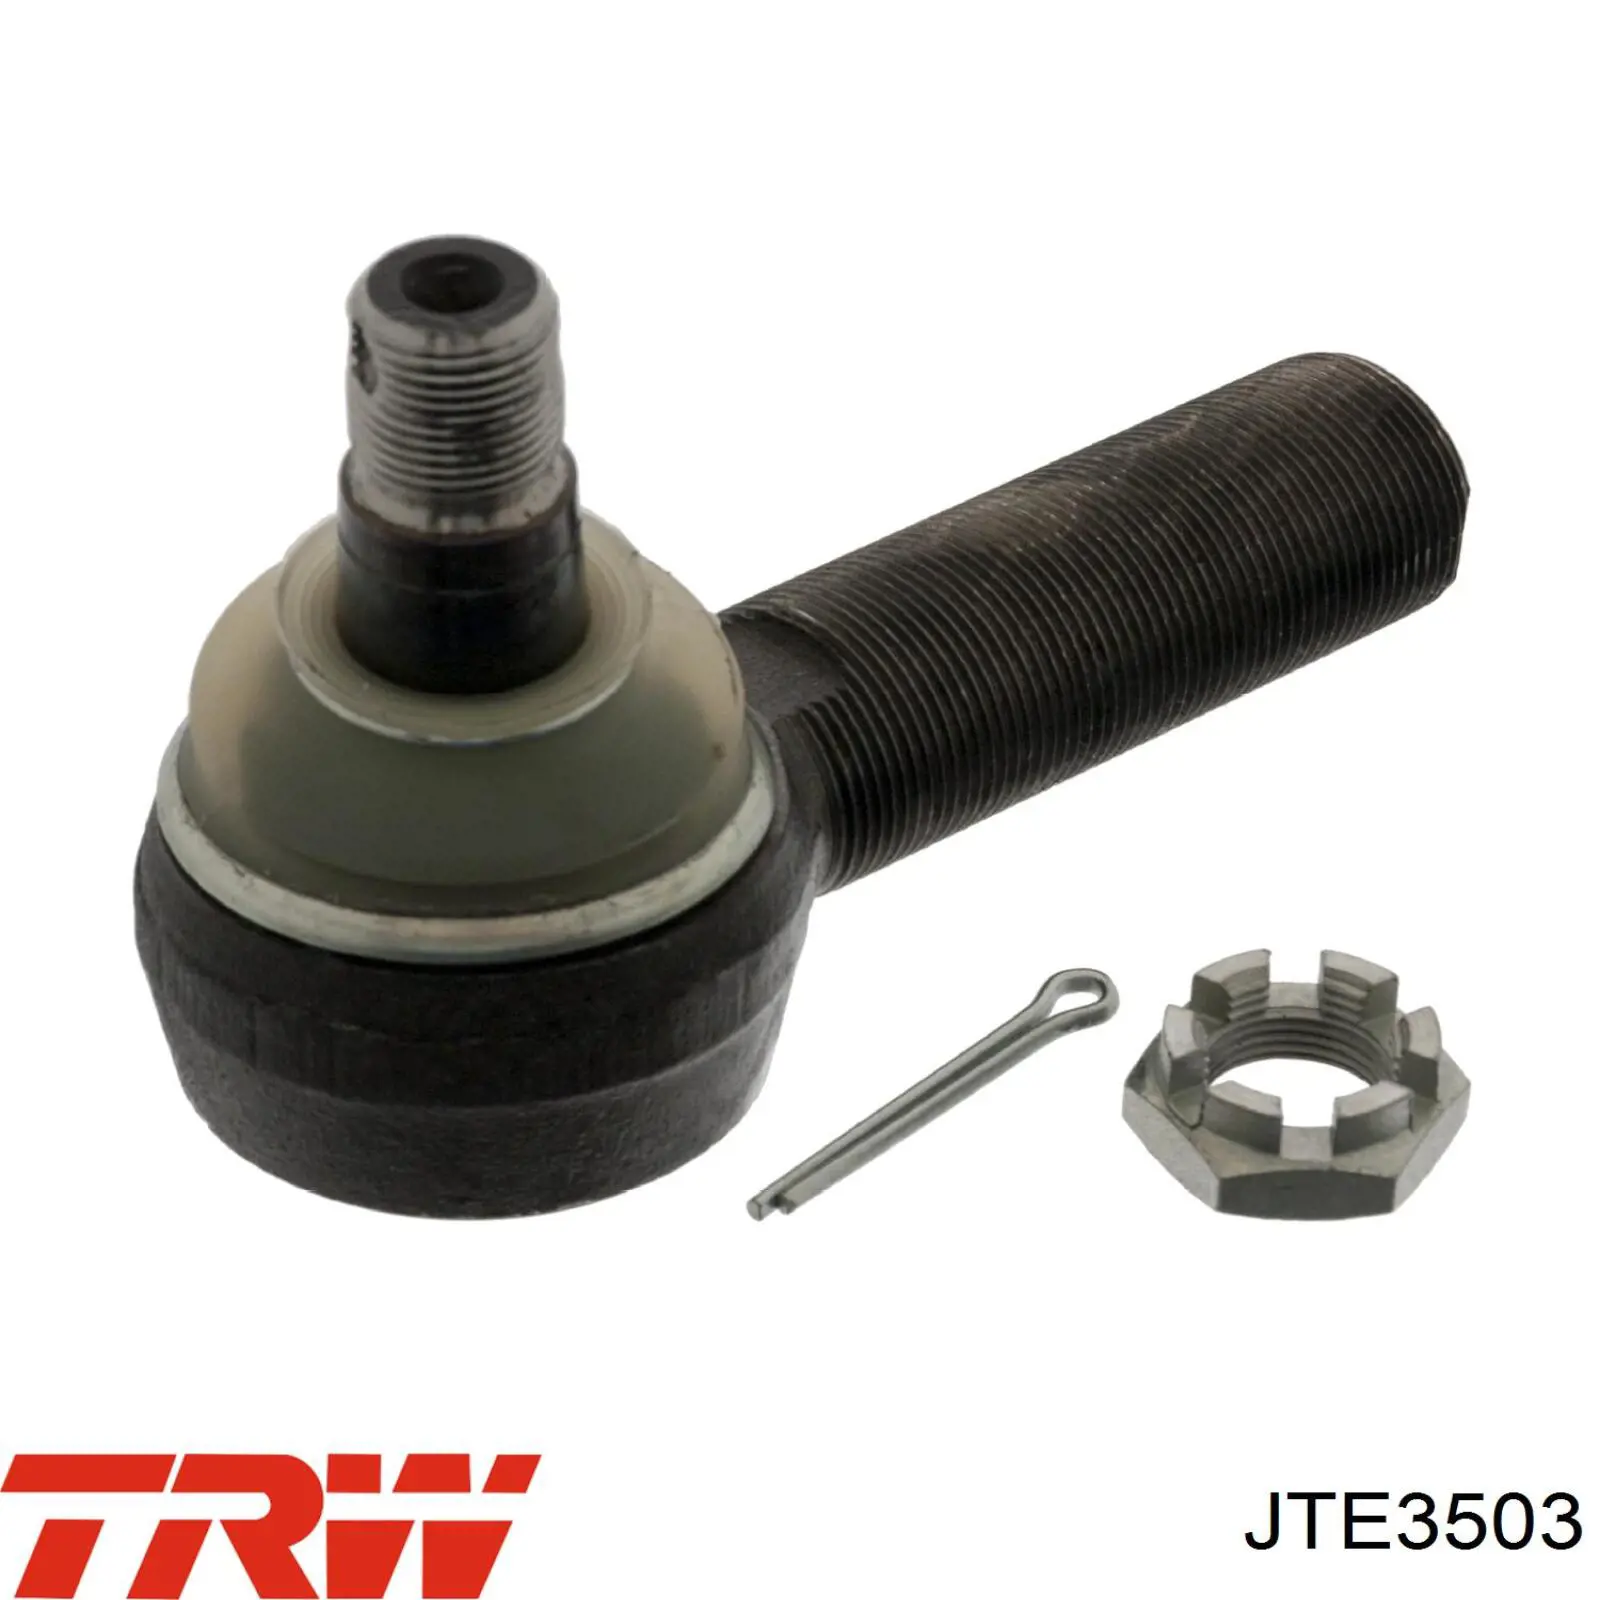 JTE3503 TRW junta angular, biela de dirección